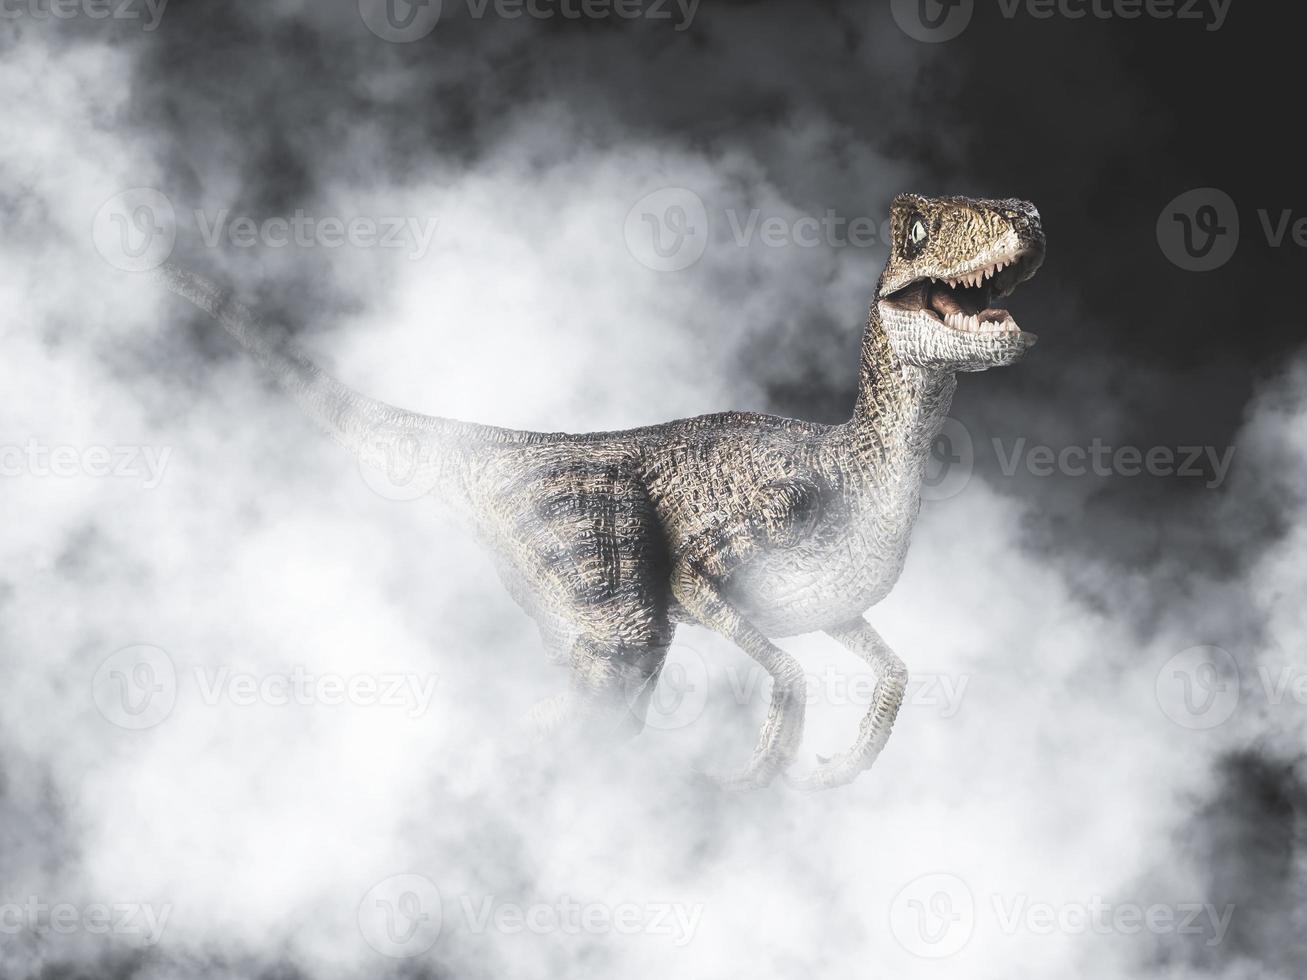 dinossauro velociraptor em fundo de fumaça foto